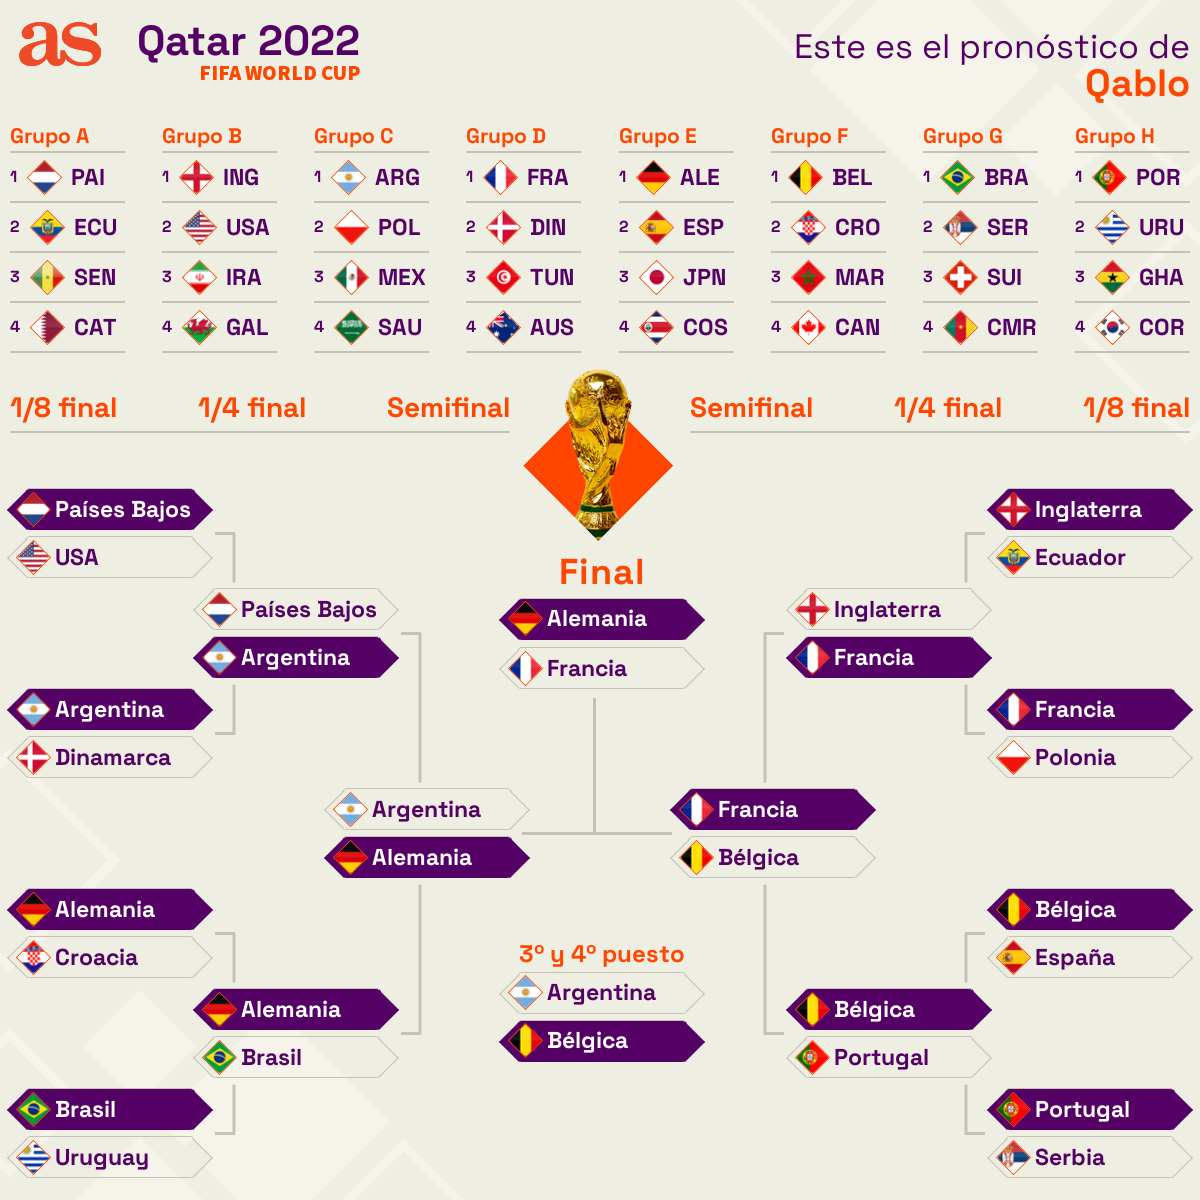 [HILO ÚNICO] Mundial de Qatar 2022 (21 Noviembre al 18 Diciembre 2022) - Página 5 World_cup_prediction_v2?user=qablo%26responsive=1%26image=flags%26lang=es&width=1200&height=1200